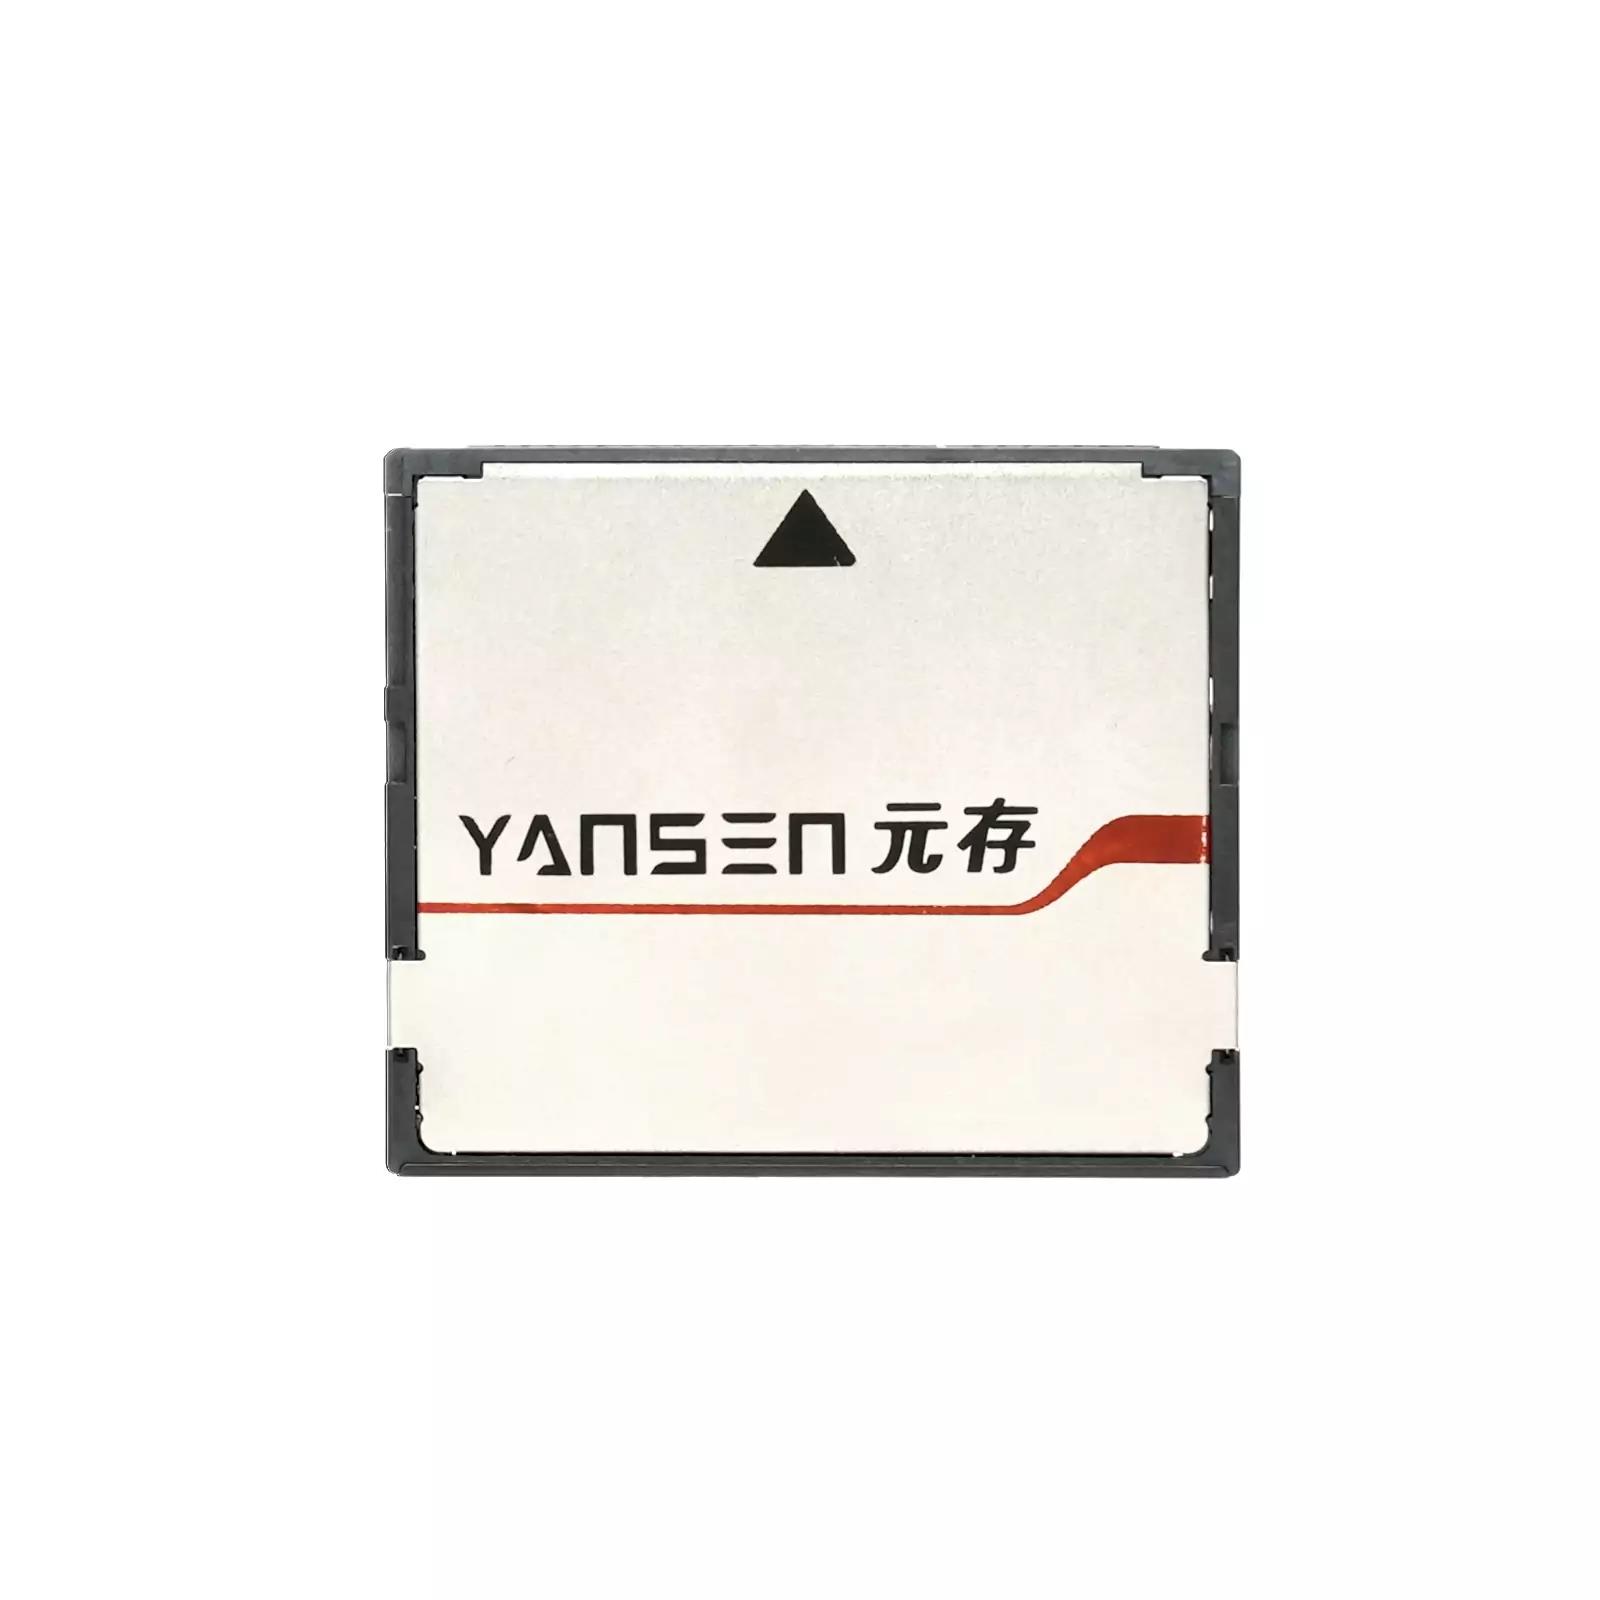 YSCS-16S